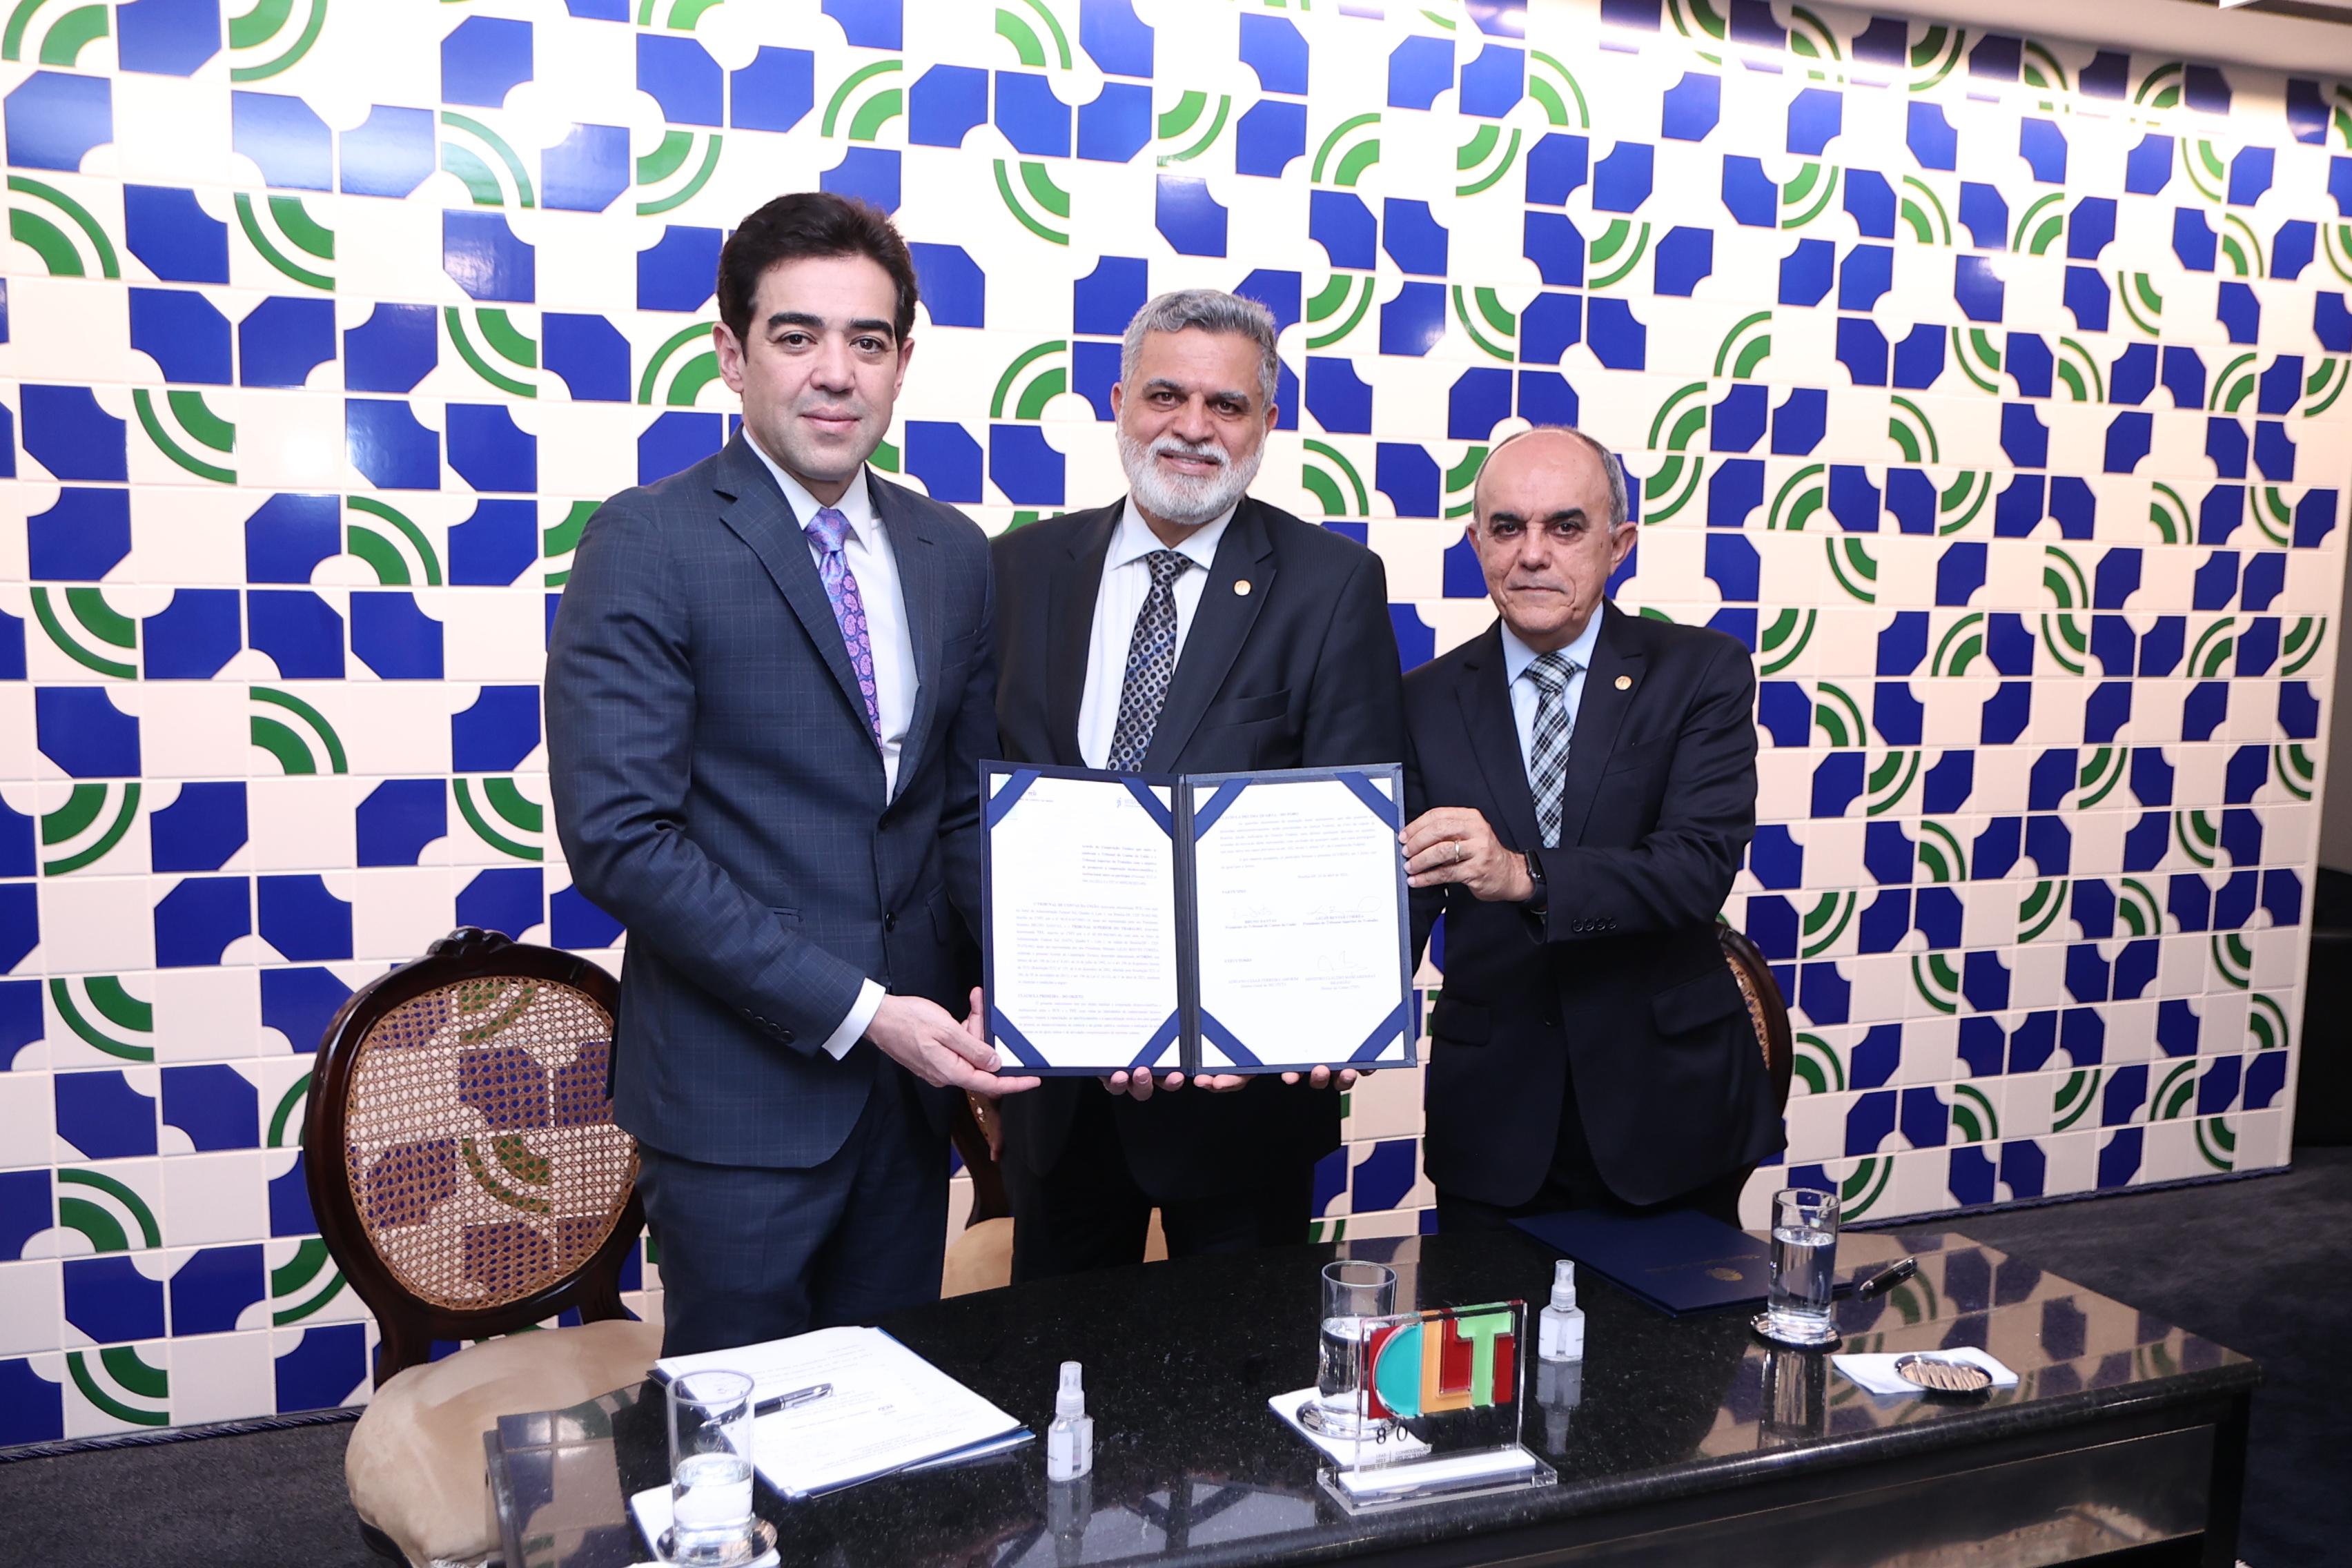 Ministros Bruno Dantas, Lelio Bentes e Cláudio Brandão segurando o acordo assinado